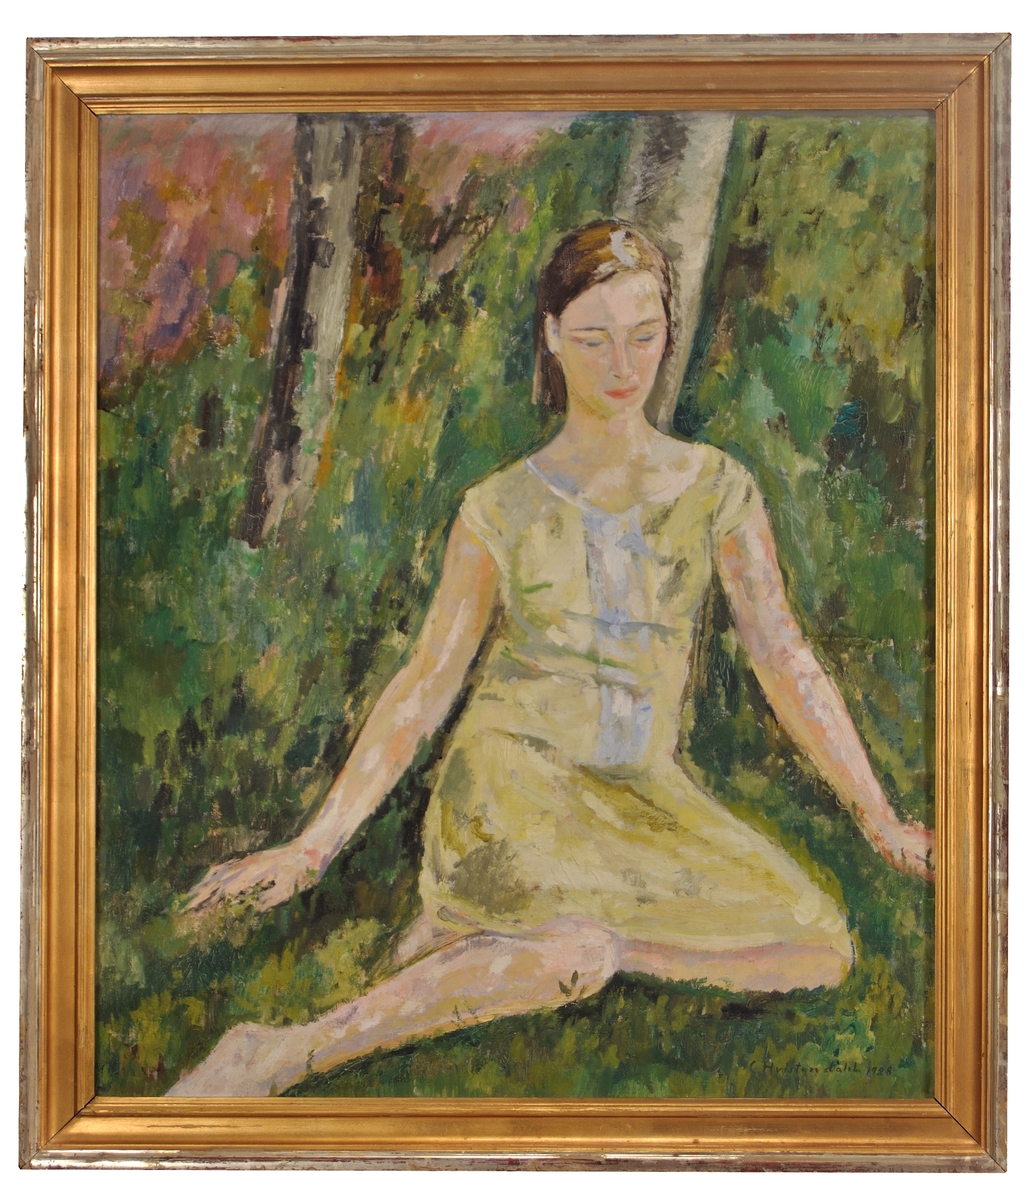 Oljemålning av Carsten Hvistendahl, "Eva". Flicka sitter på gröngräset, några trädstammar bakom; gul klänning.